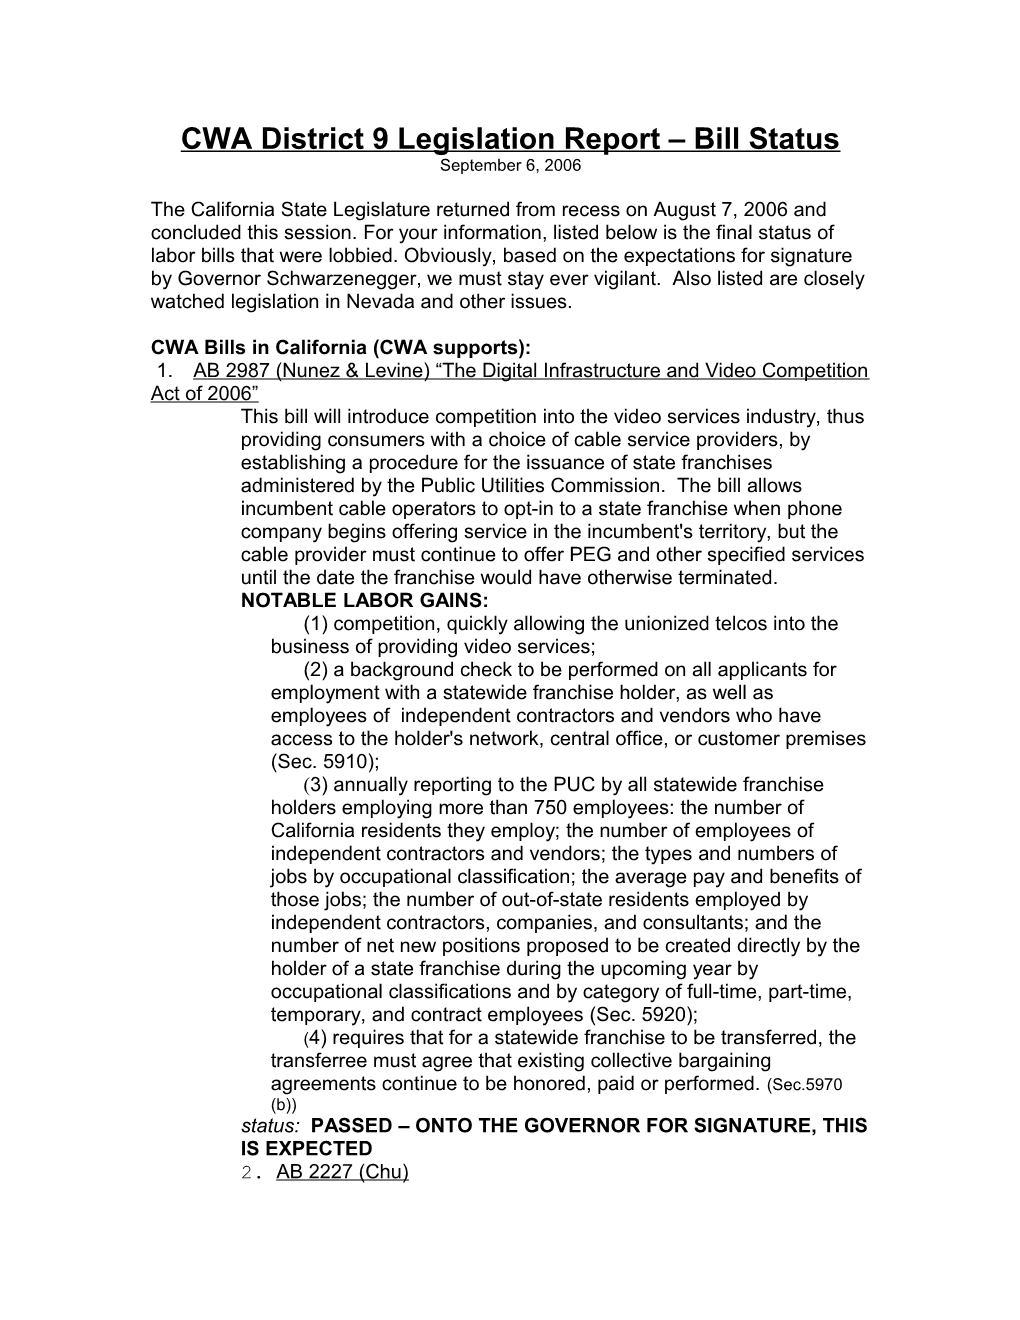 CWA District 9 Legislation Report Bill Status